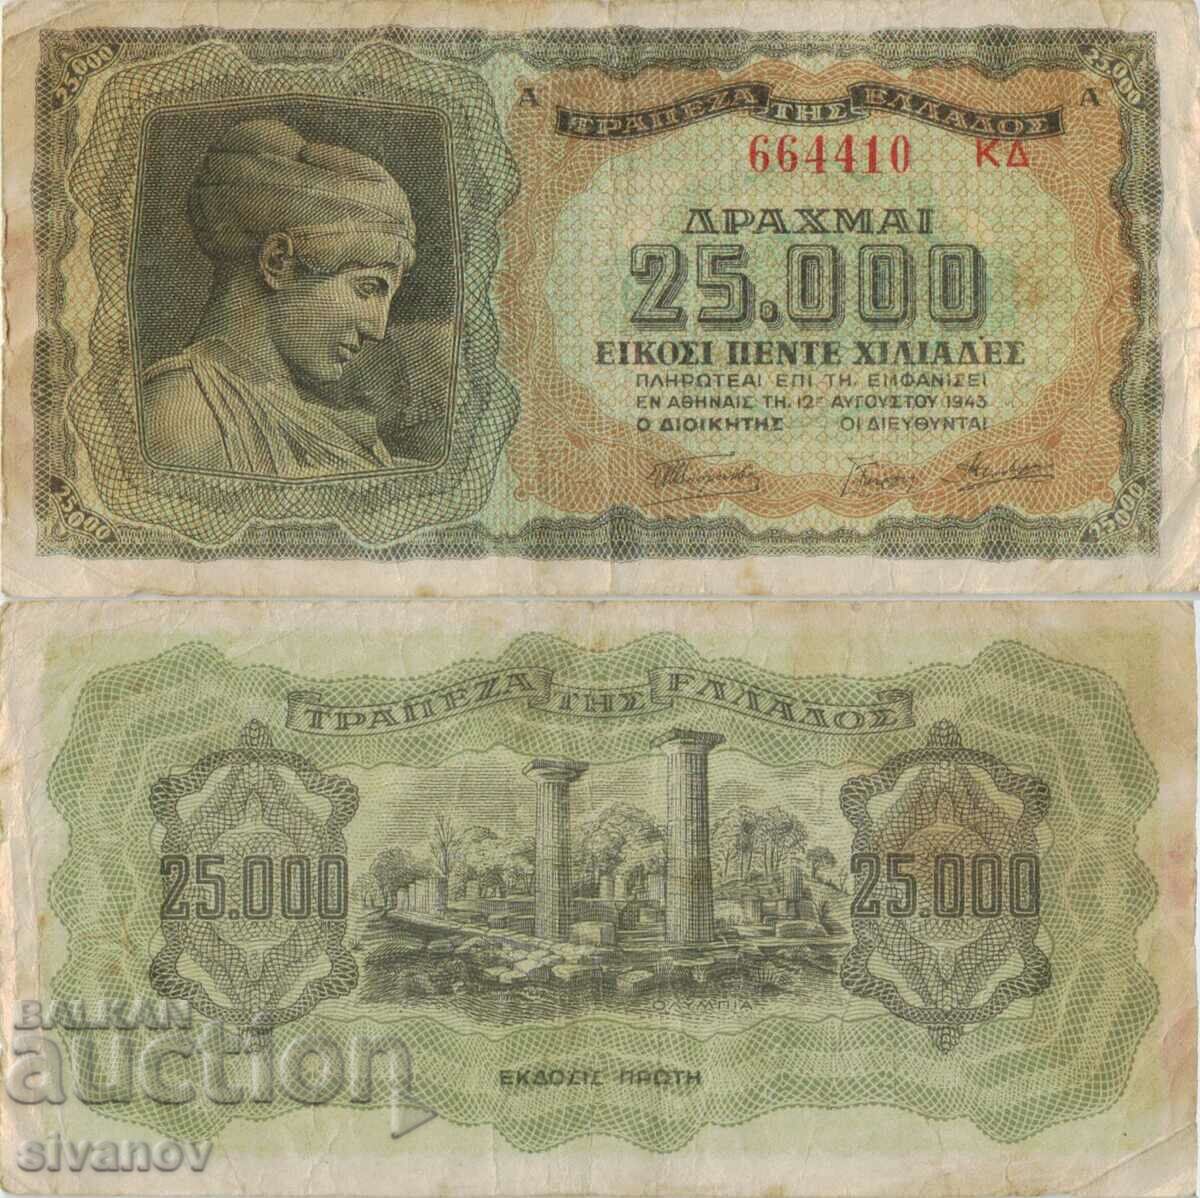 Ελλάδα 25000 δραχμές γράμματα 1943 τραπεζογραμμάτιο στην πλάτη #5101